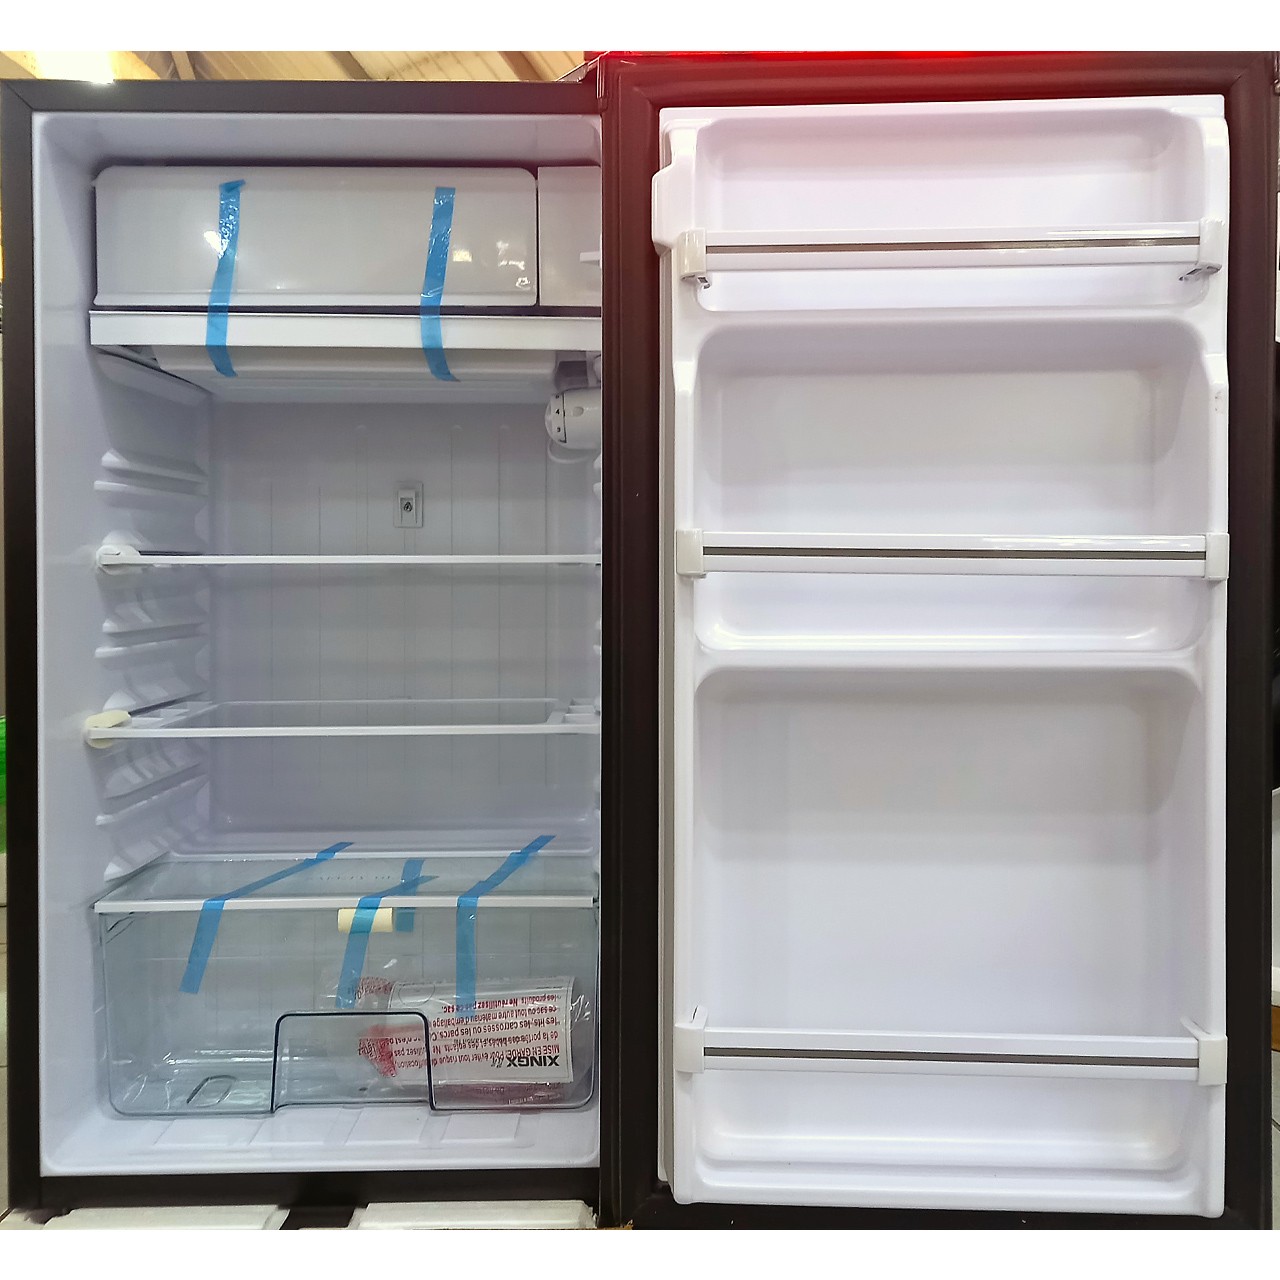 Холодильник однокамерный Xingx 90 литров